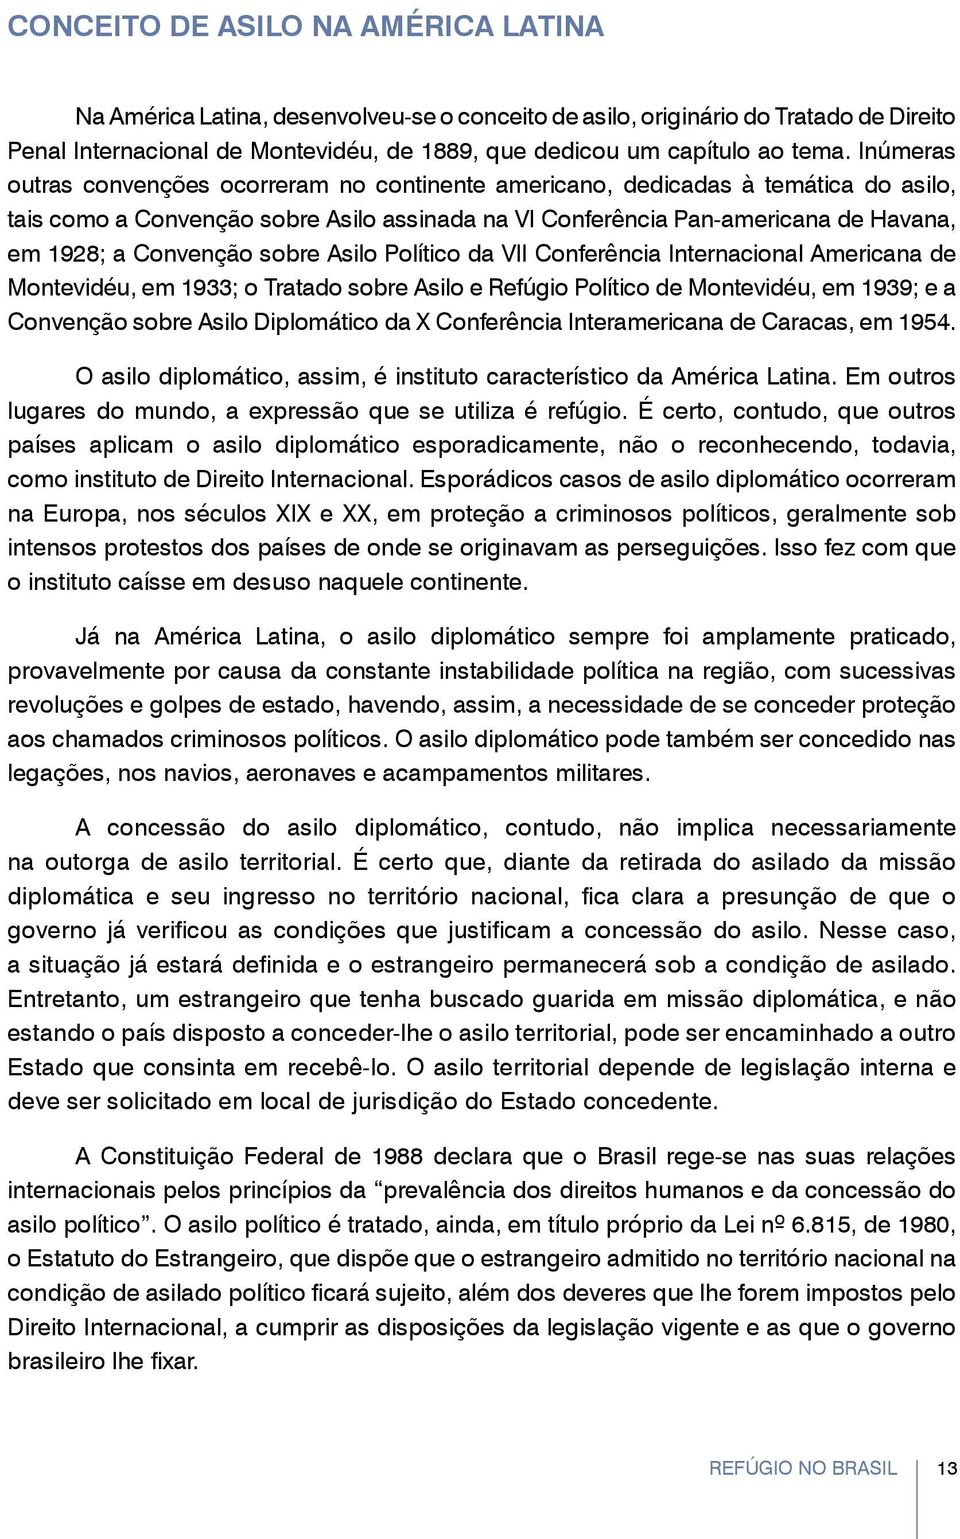 sobre Asilo Político da VII Conferência Internacional Americana de Montevidéu, em 1933; o Tratado sobre Asilo e Refúgio Político de Montevidéu, em 1939; e a Convenção sobre Asilo Diplomático da X